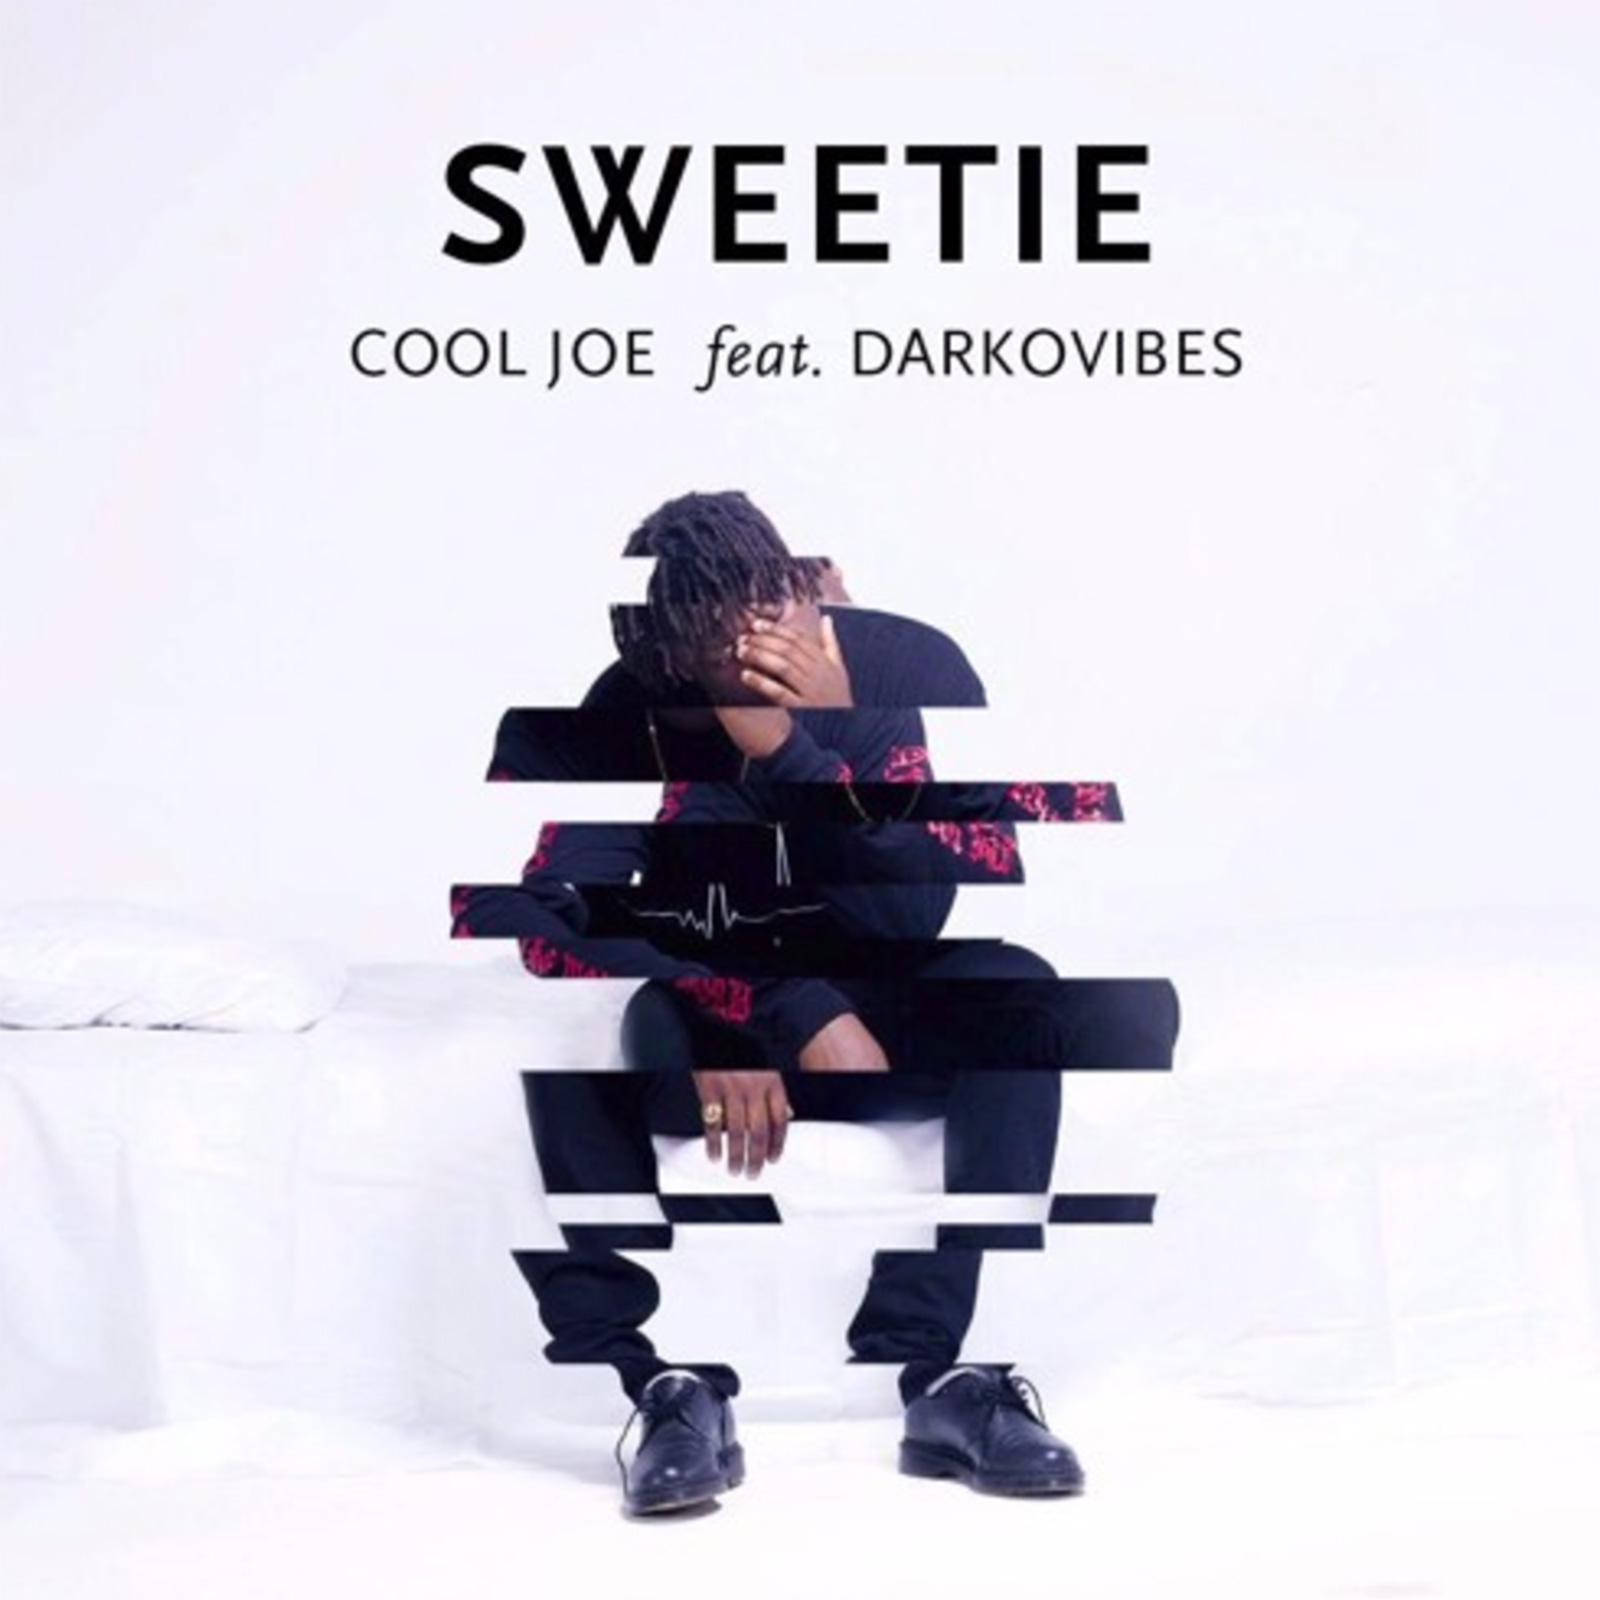 Sweetie by Cool Joe feat. DarkoVibes